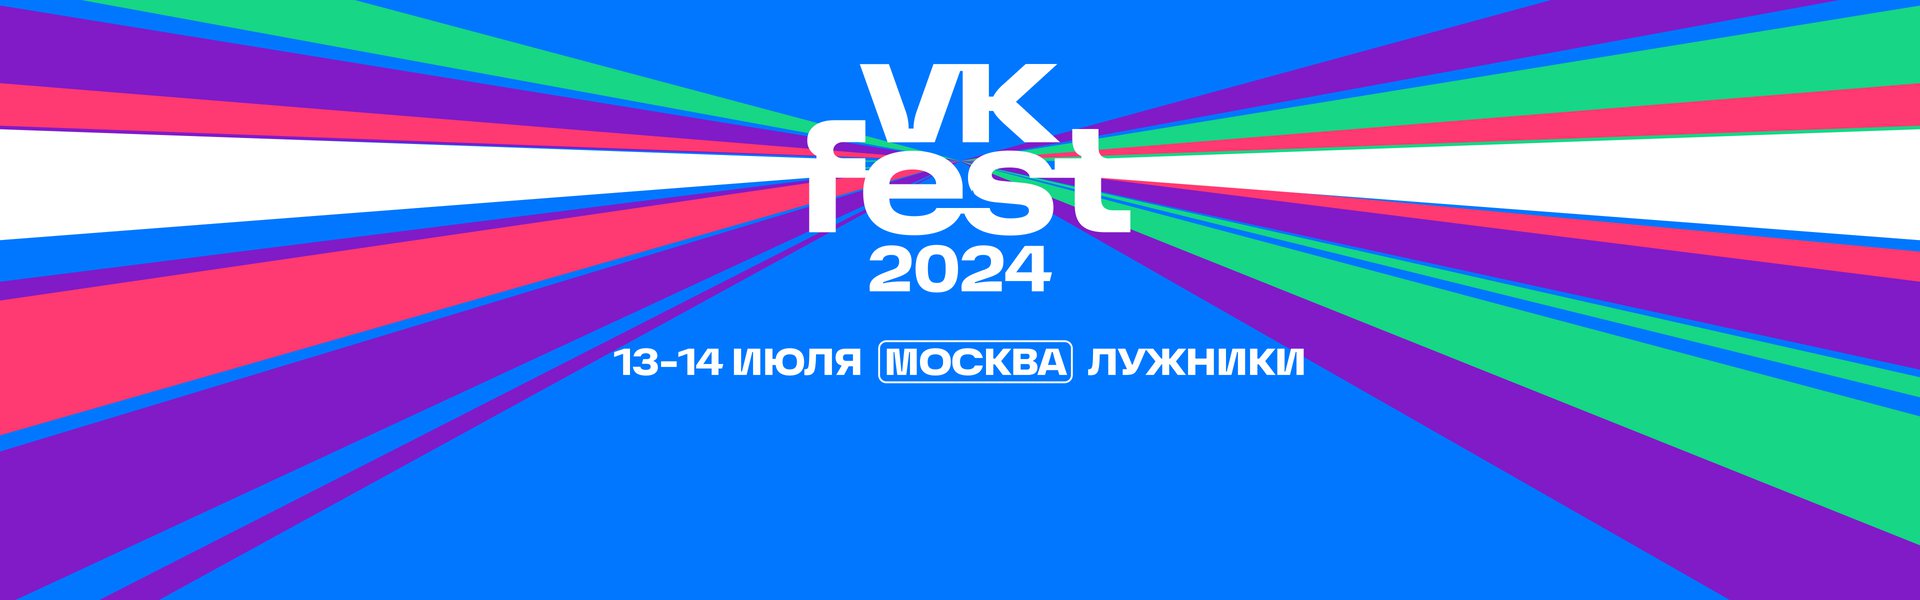 VK Fest в «Лужниках»!